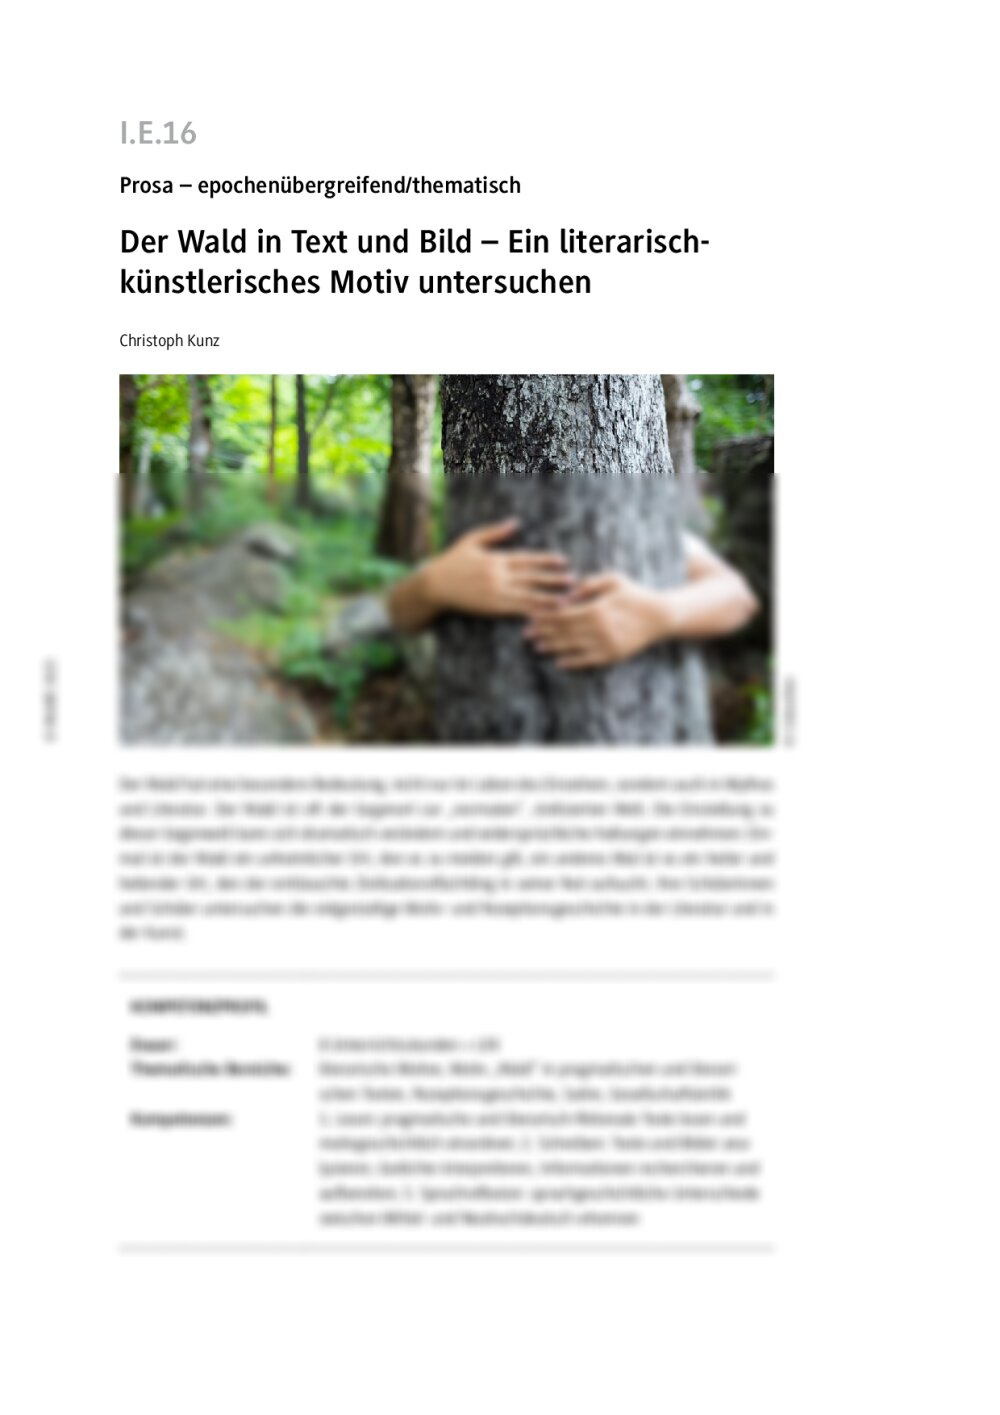 Der Wald in Text und Bild - Seite 1